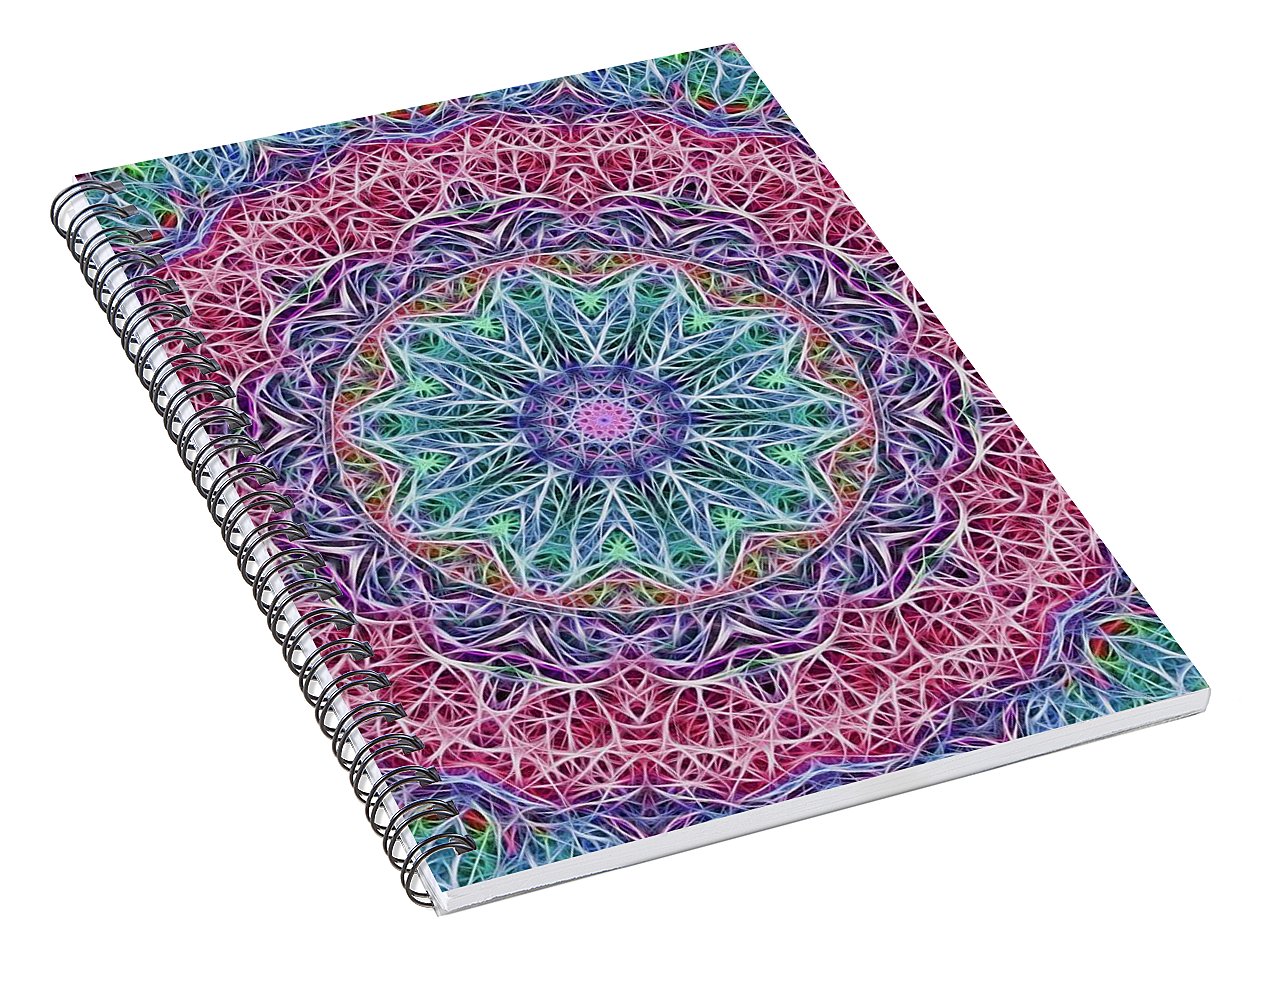 Kaleidoscope 115 - Spiral Notebook